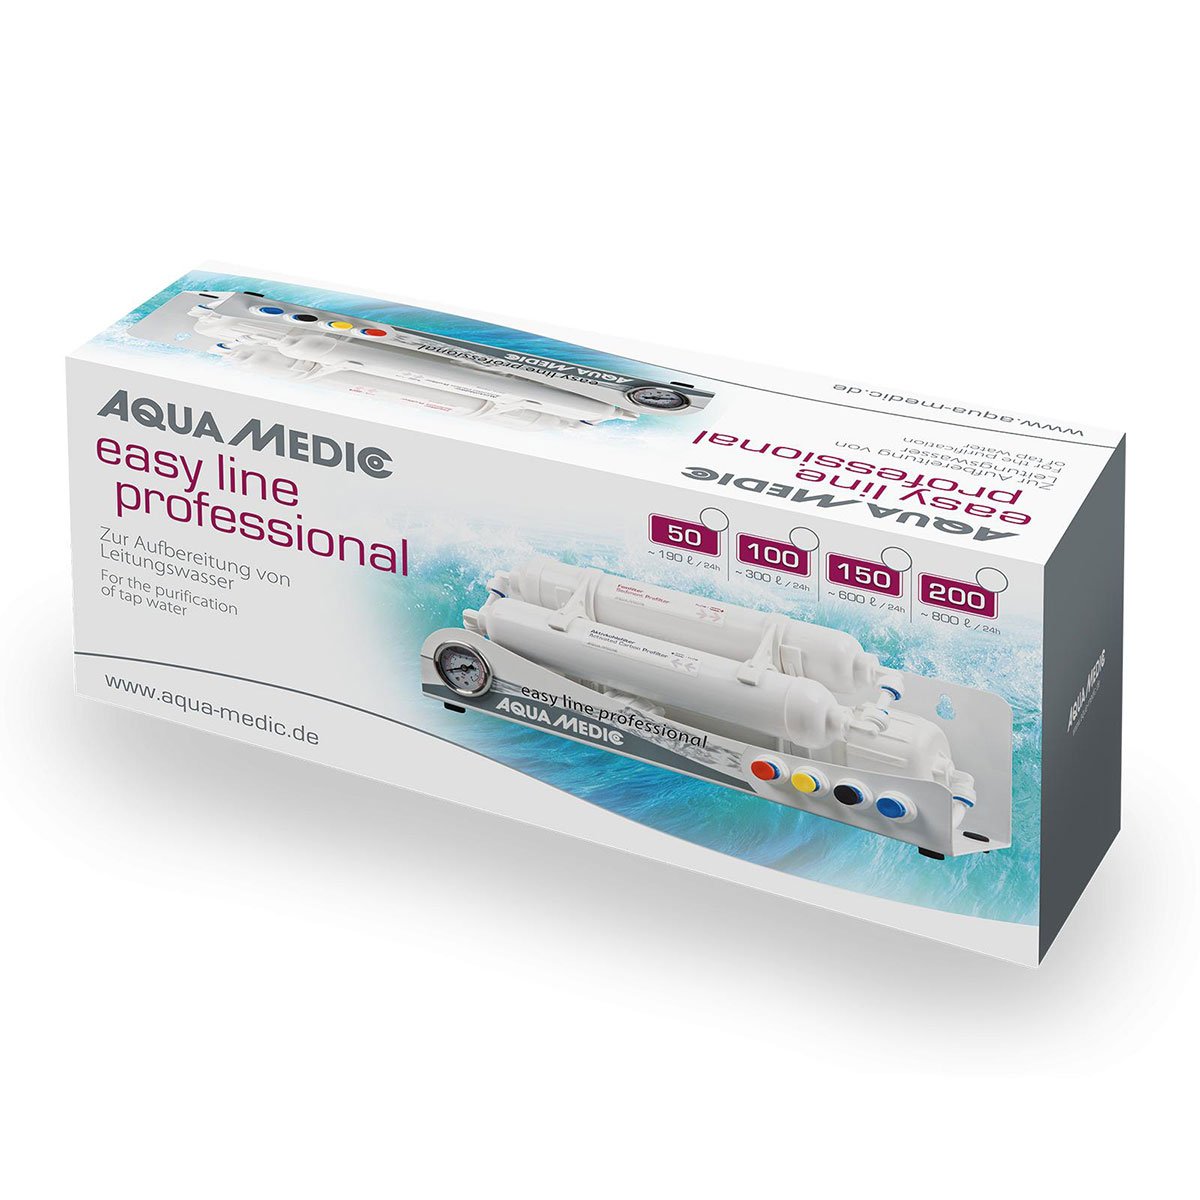 Aqua Medic Osmoseanlage easy line professional 200GPD von Aqua Medic